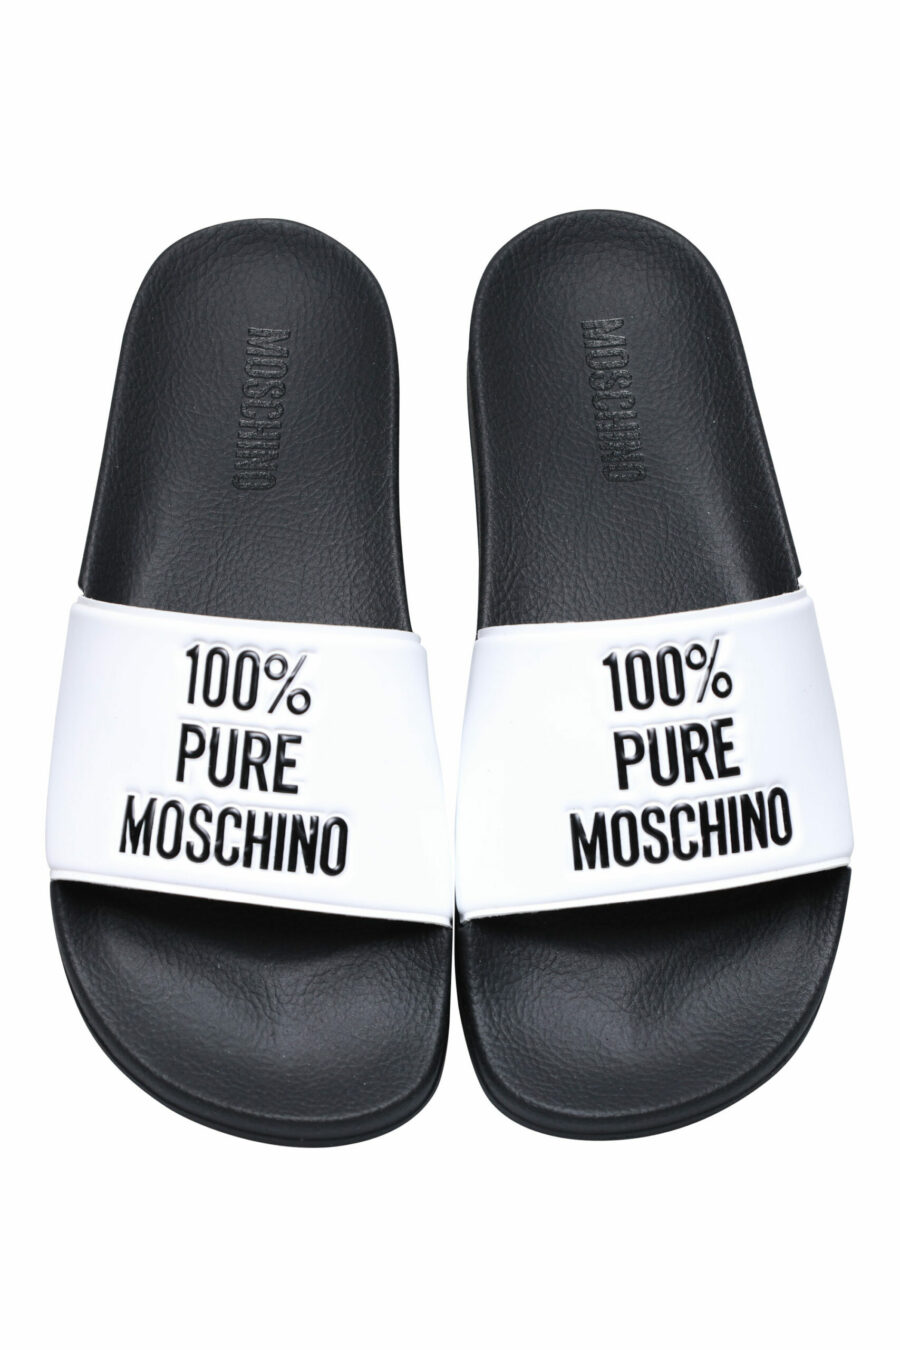 Weiße Flip Flops mit Logo "100% pure moschino" - 8054388534581 3 skaliert